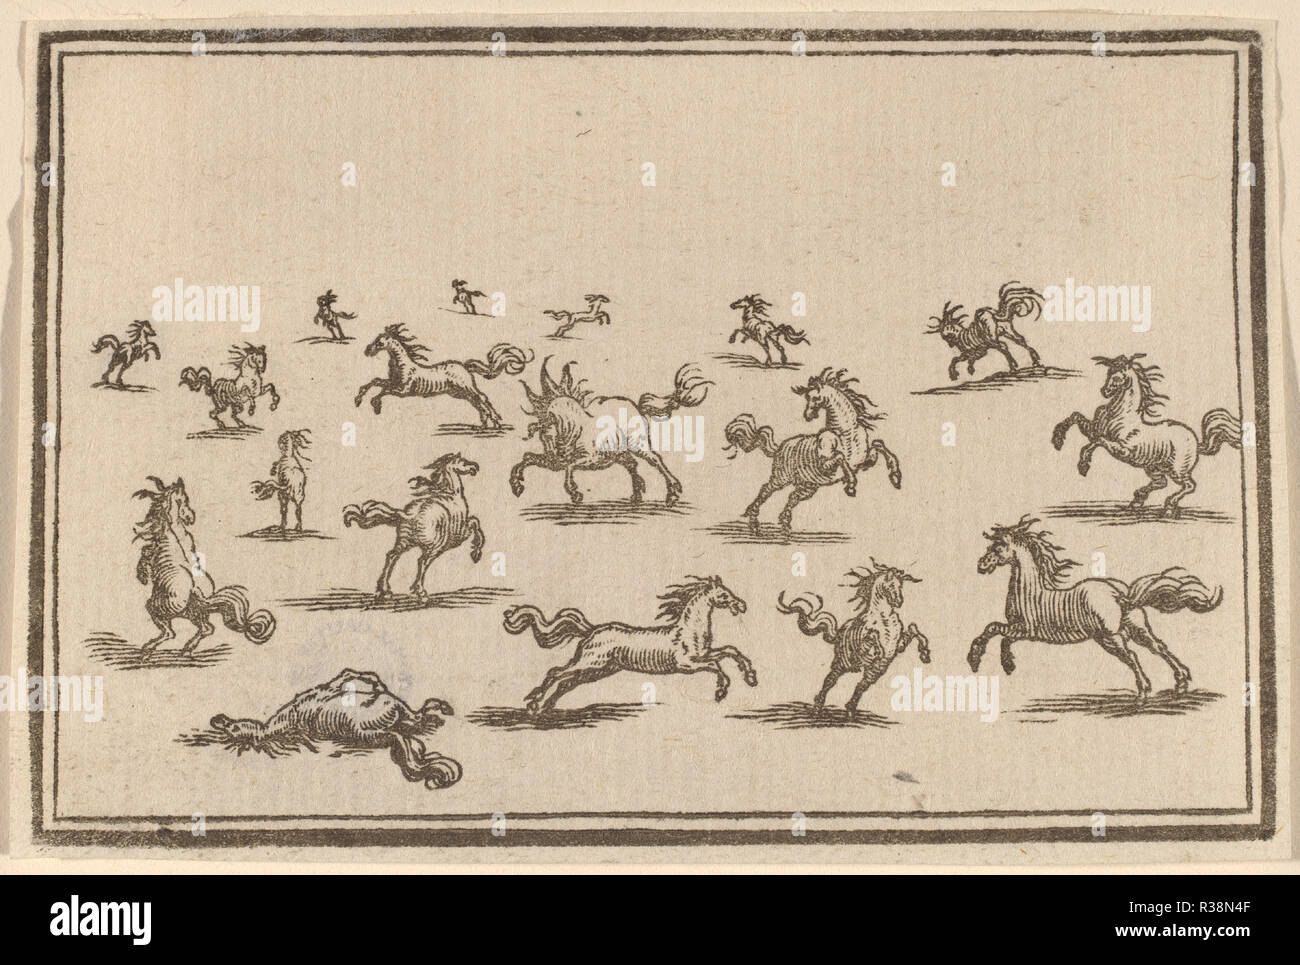 Cavalli in esecuzione. Data: 1621. Medium: xilografia. Museo: National Gallery of Art di Washington DC. Autore: Edouard Eckman dopo Jacques Callot. Foto Stock